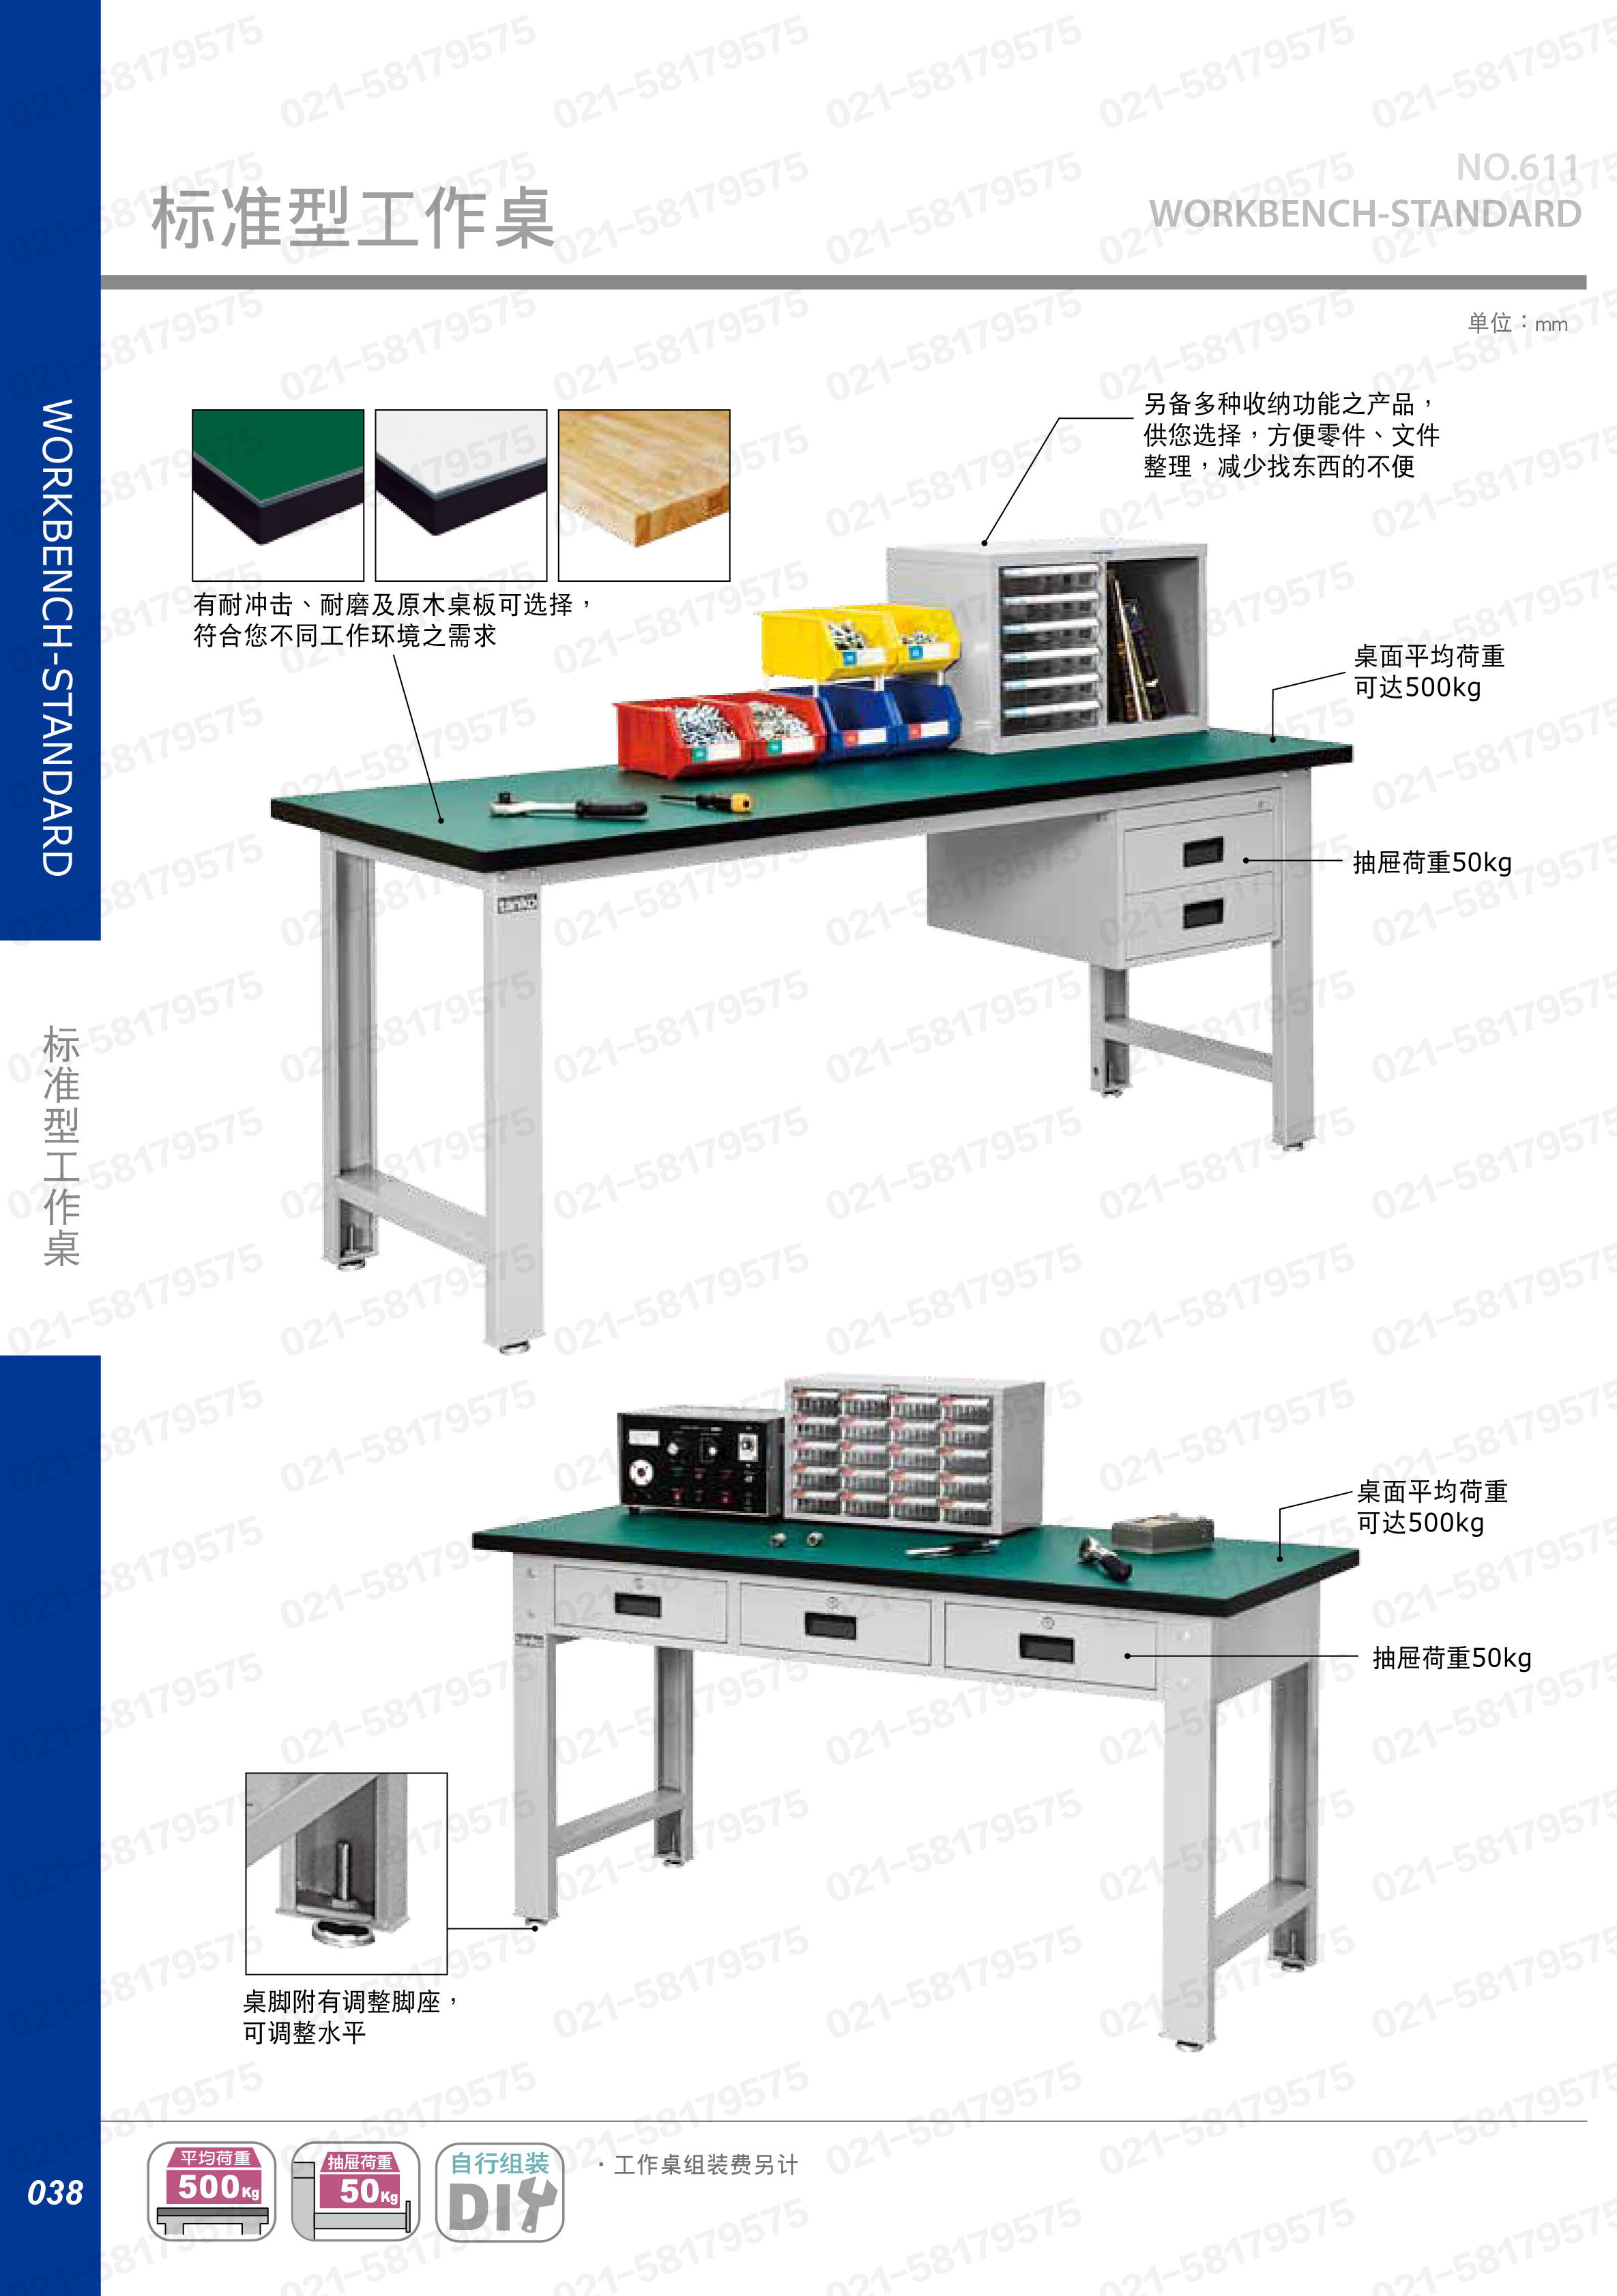 轻型工作桌1500×750×800mm 耐磨桌板 带双吊抽,WBS-53021F,5D2936